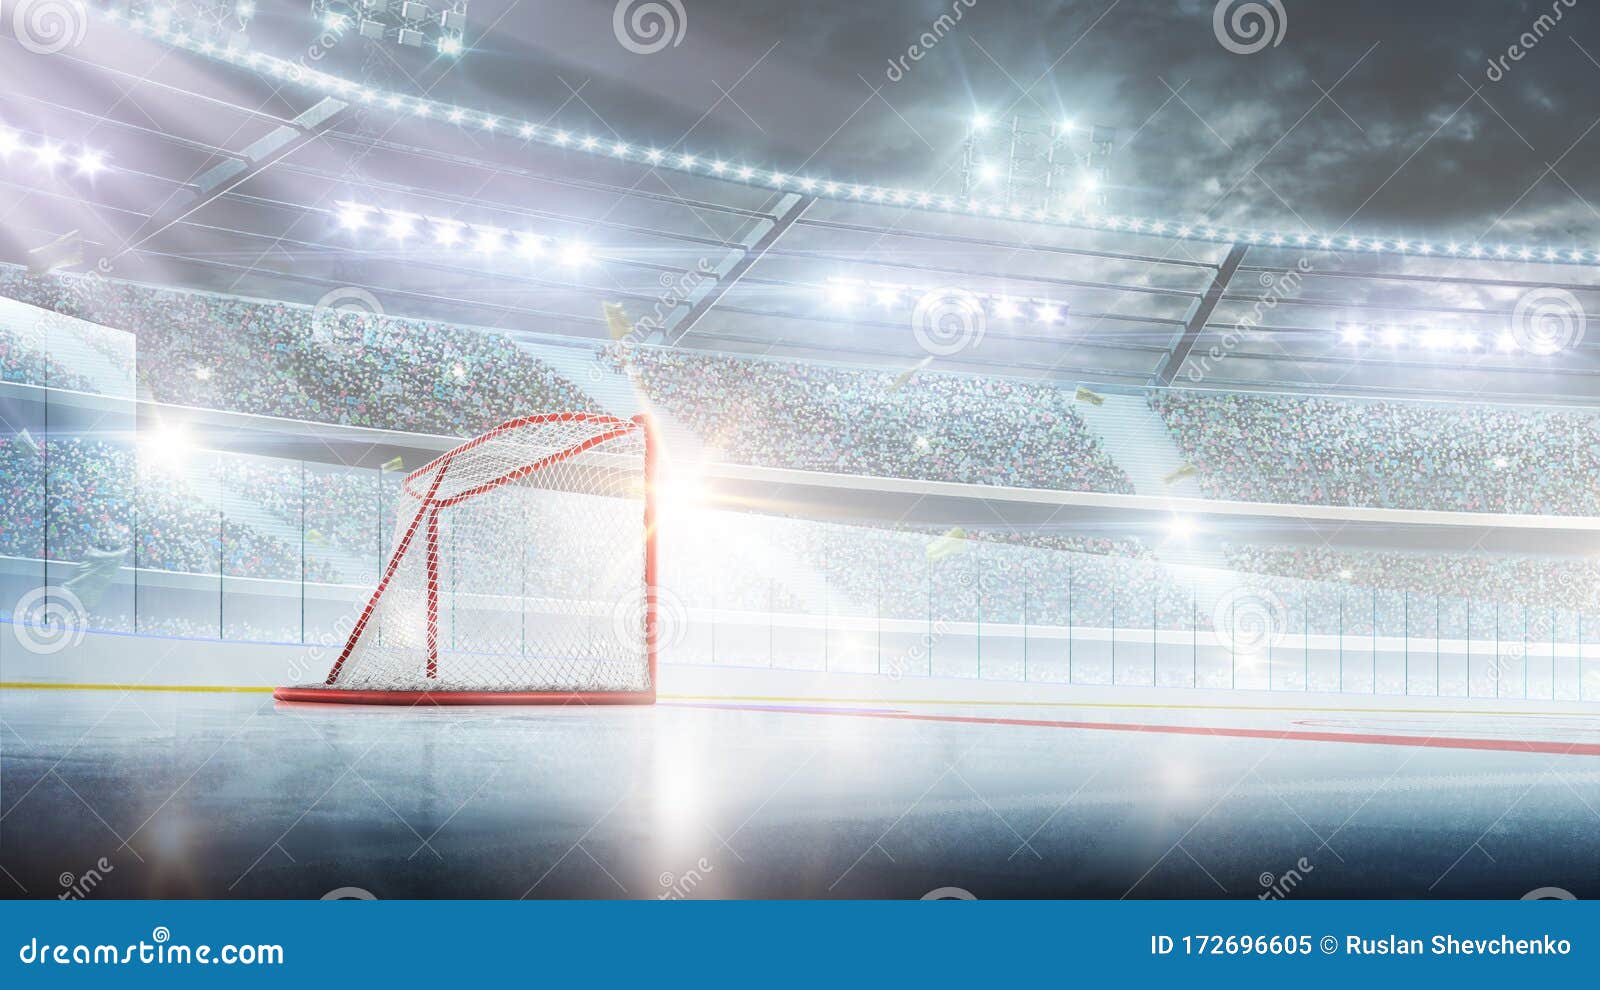 red gate on the empty hockey rink. hockey gates in the spotlight. hockeq arena. sport background